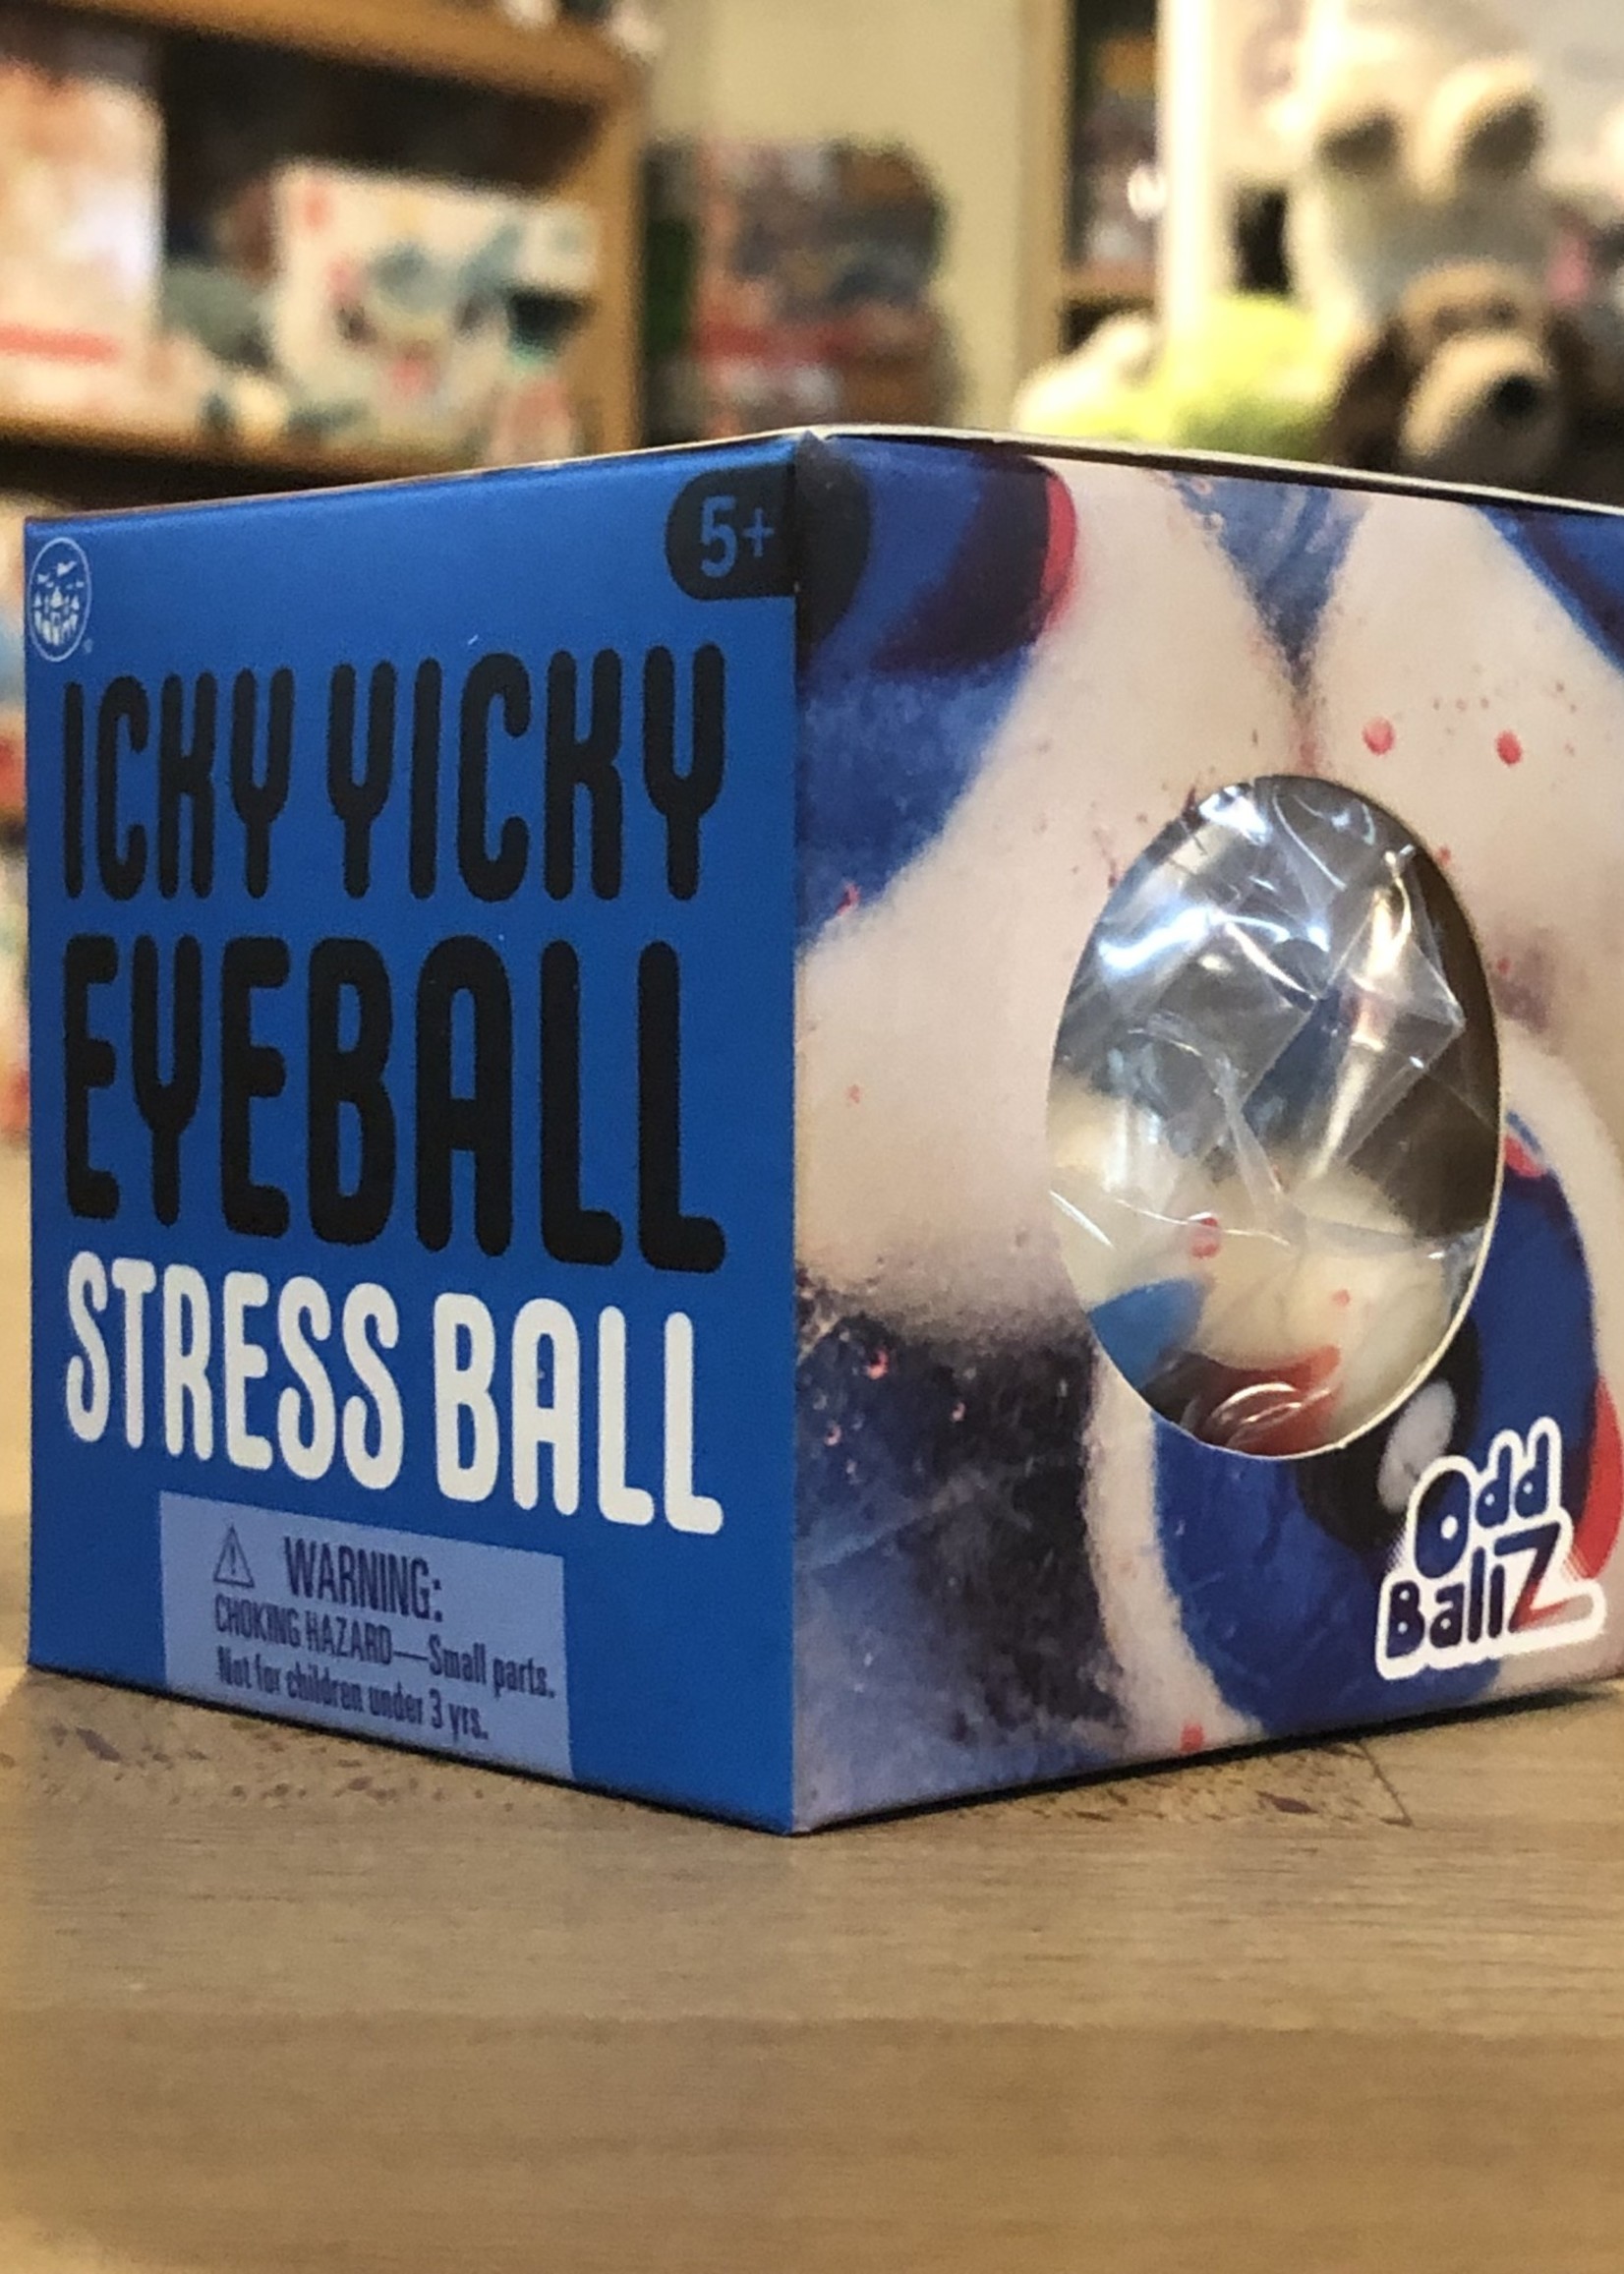 Odd Ballz - Icky Yicky Eyeballs